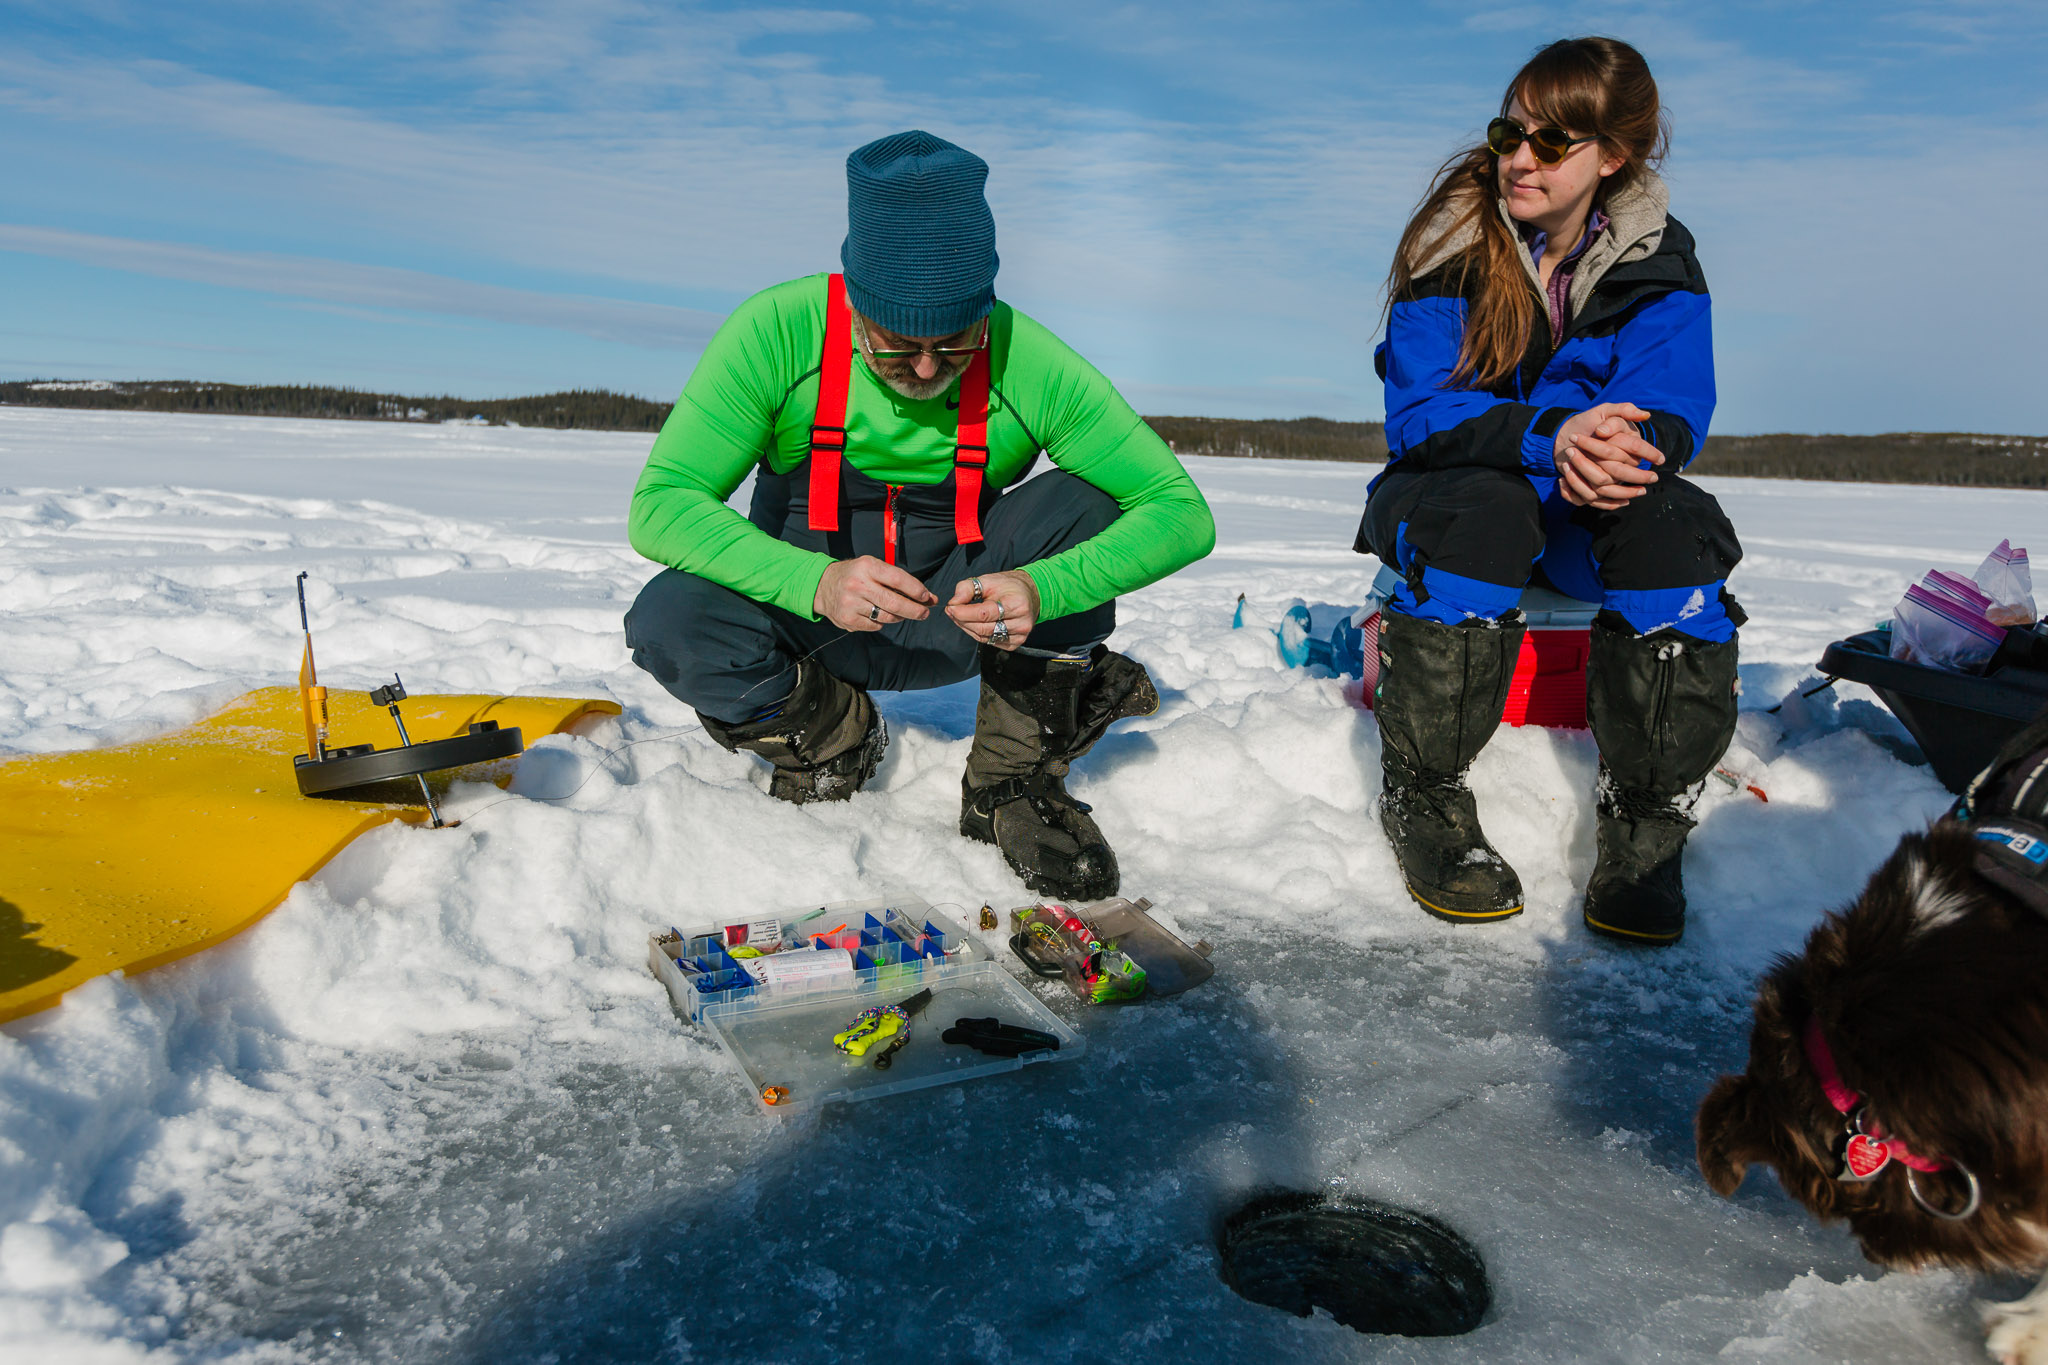 Day 3: ICE FISHING – Yellowknife, Northwest Territories – Canada